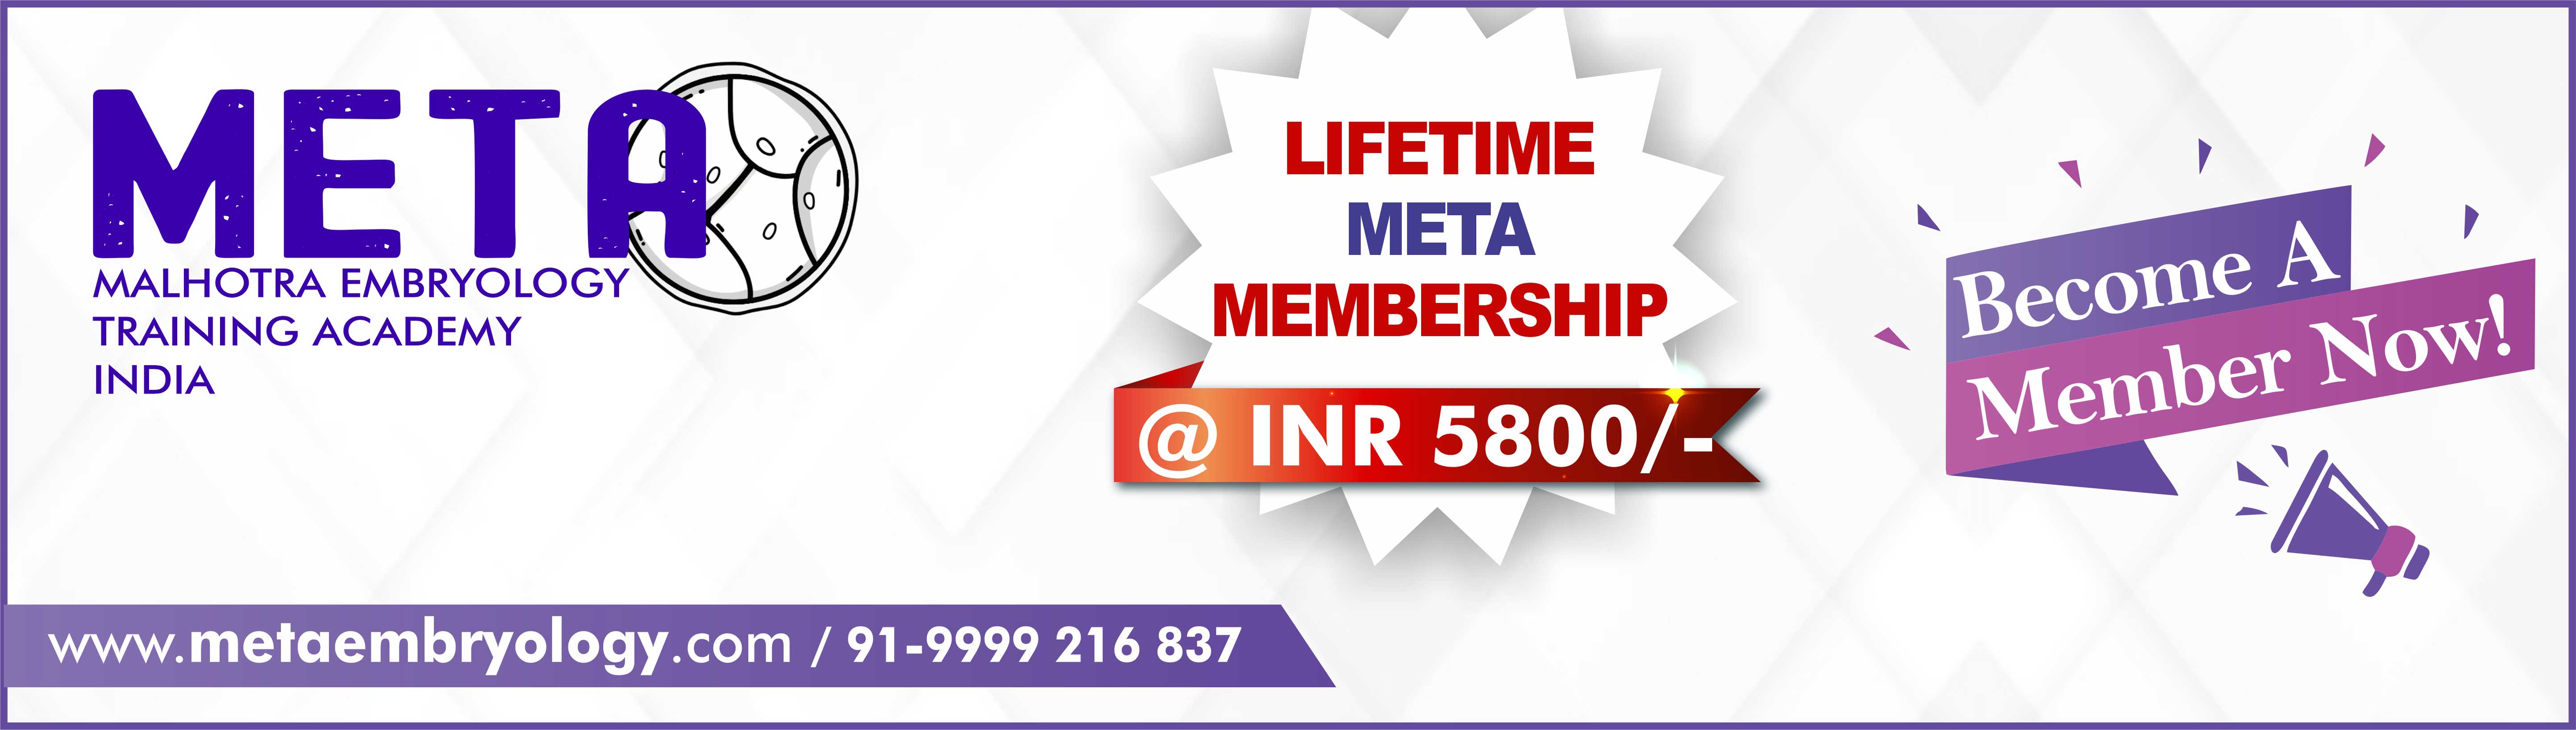 Annual META Membership